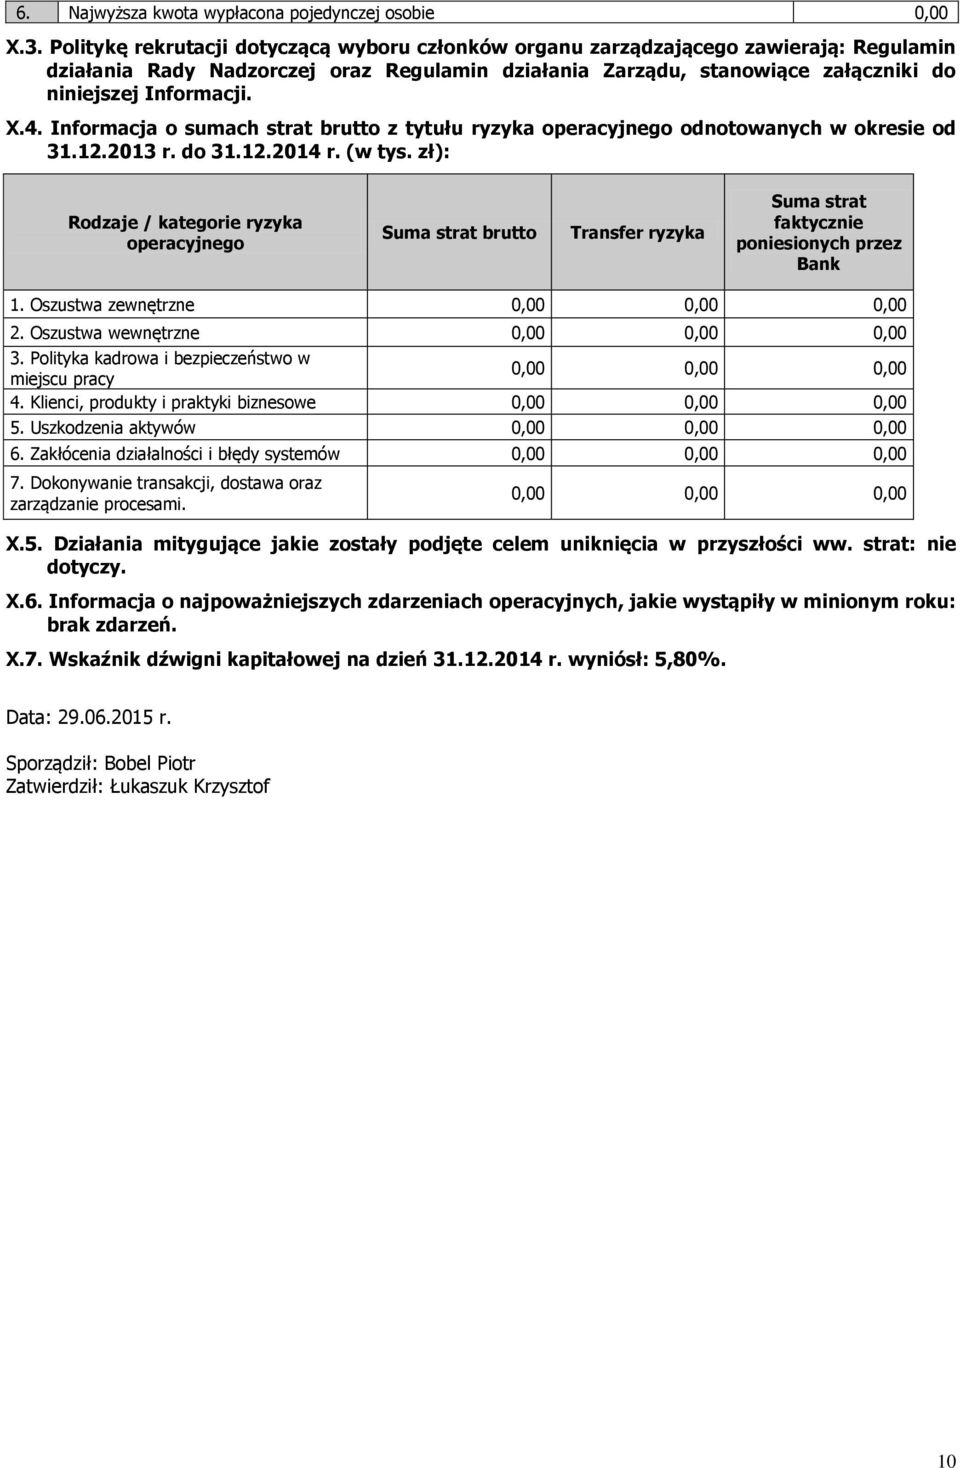 4. Informacja o sumach strat brutto z tytułu ryzyka operacyjnego odnotowanych w okresie od 31.12.2013 r. do 31.12.2014 r. (w tys.